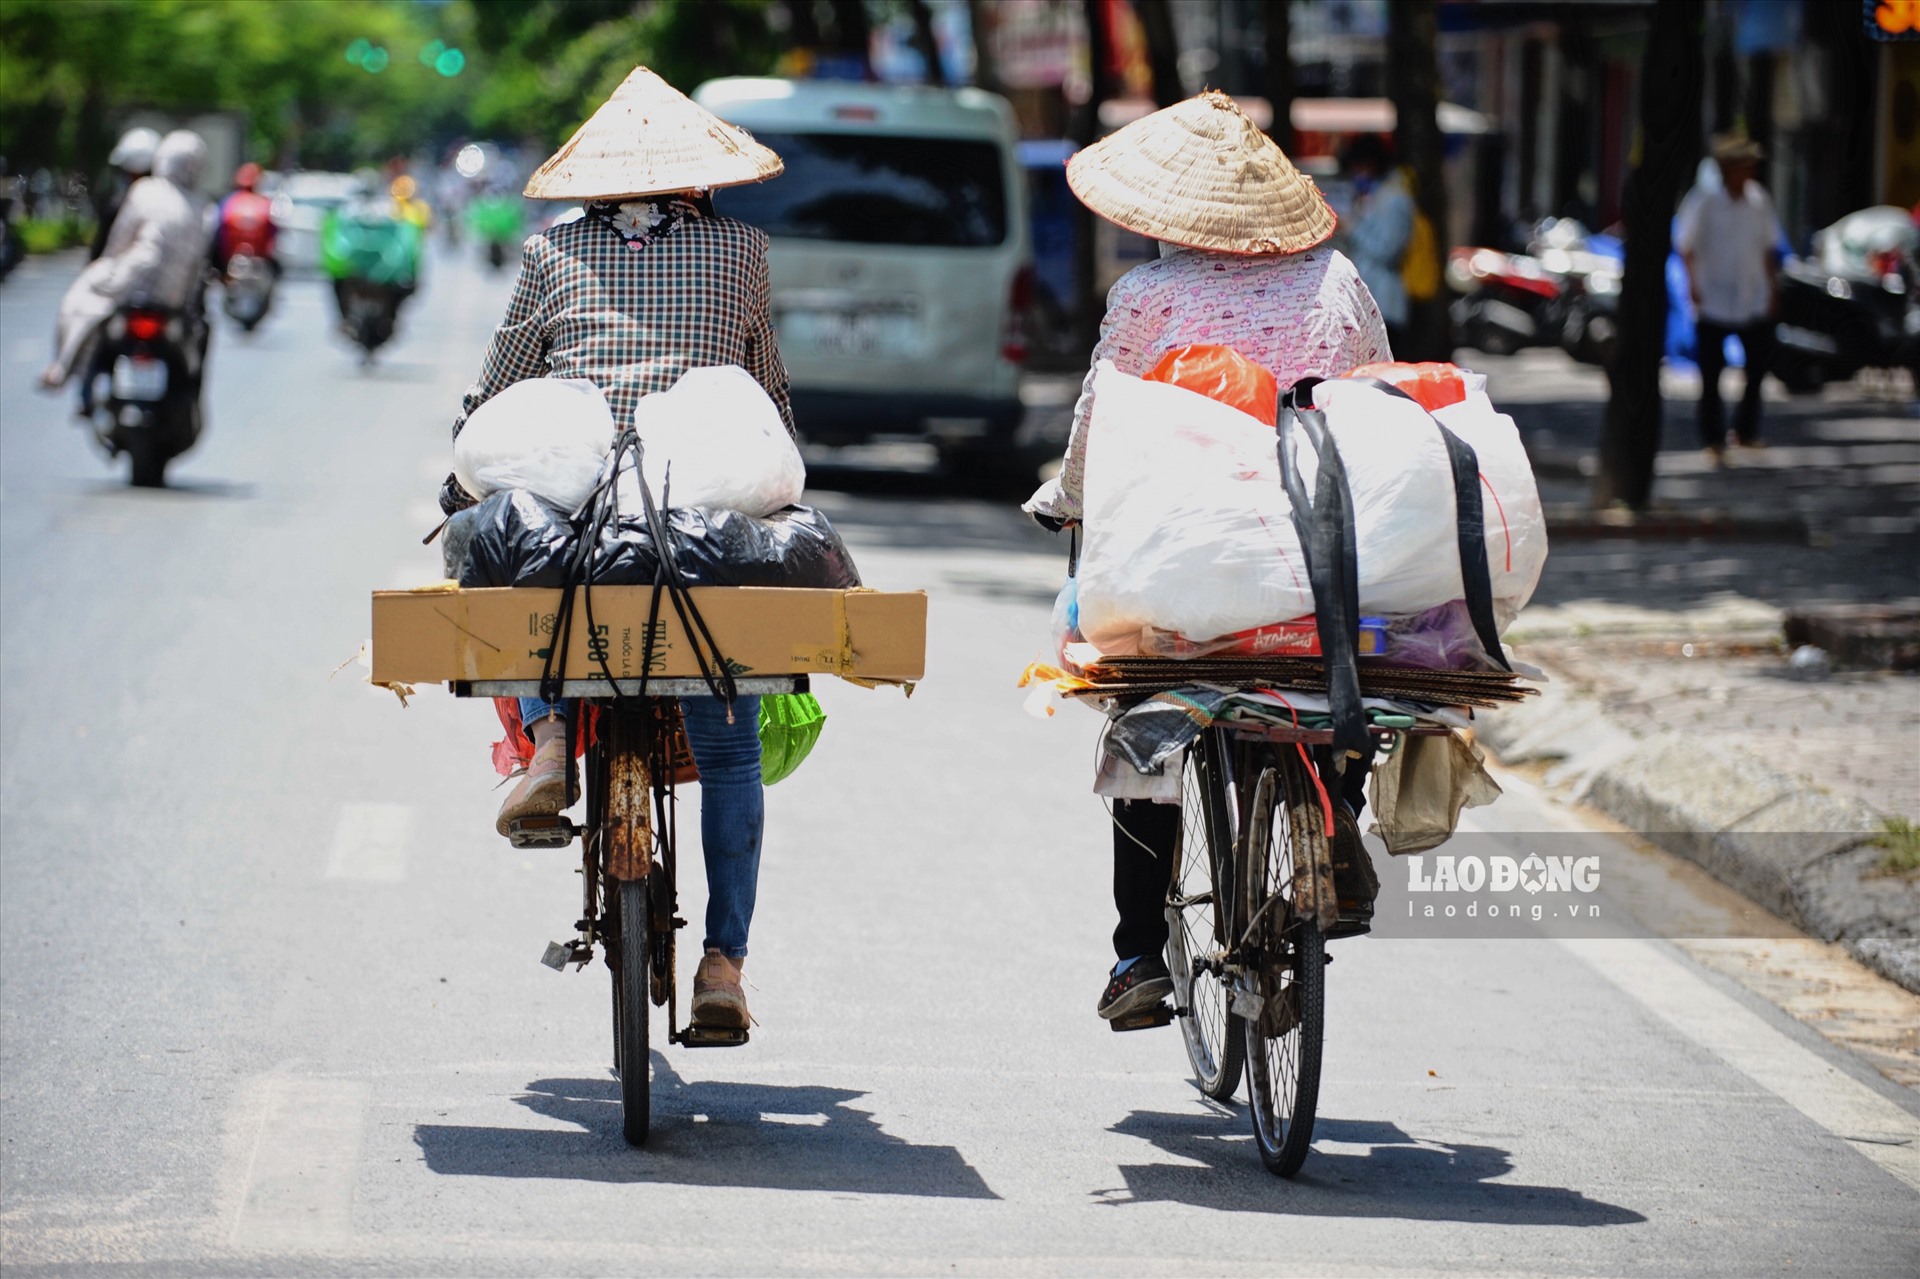 Chỉ số tia UV tại Hà Nội ngày hôm nay cũng lên tới mức 8-10, đây mức nguy hiểm với sức khoẻ con người.